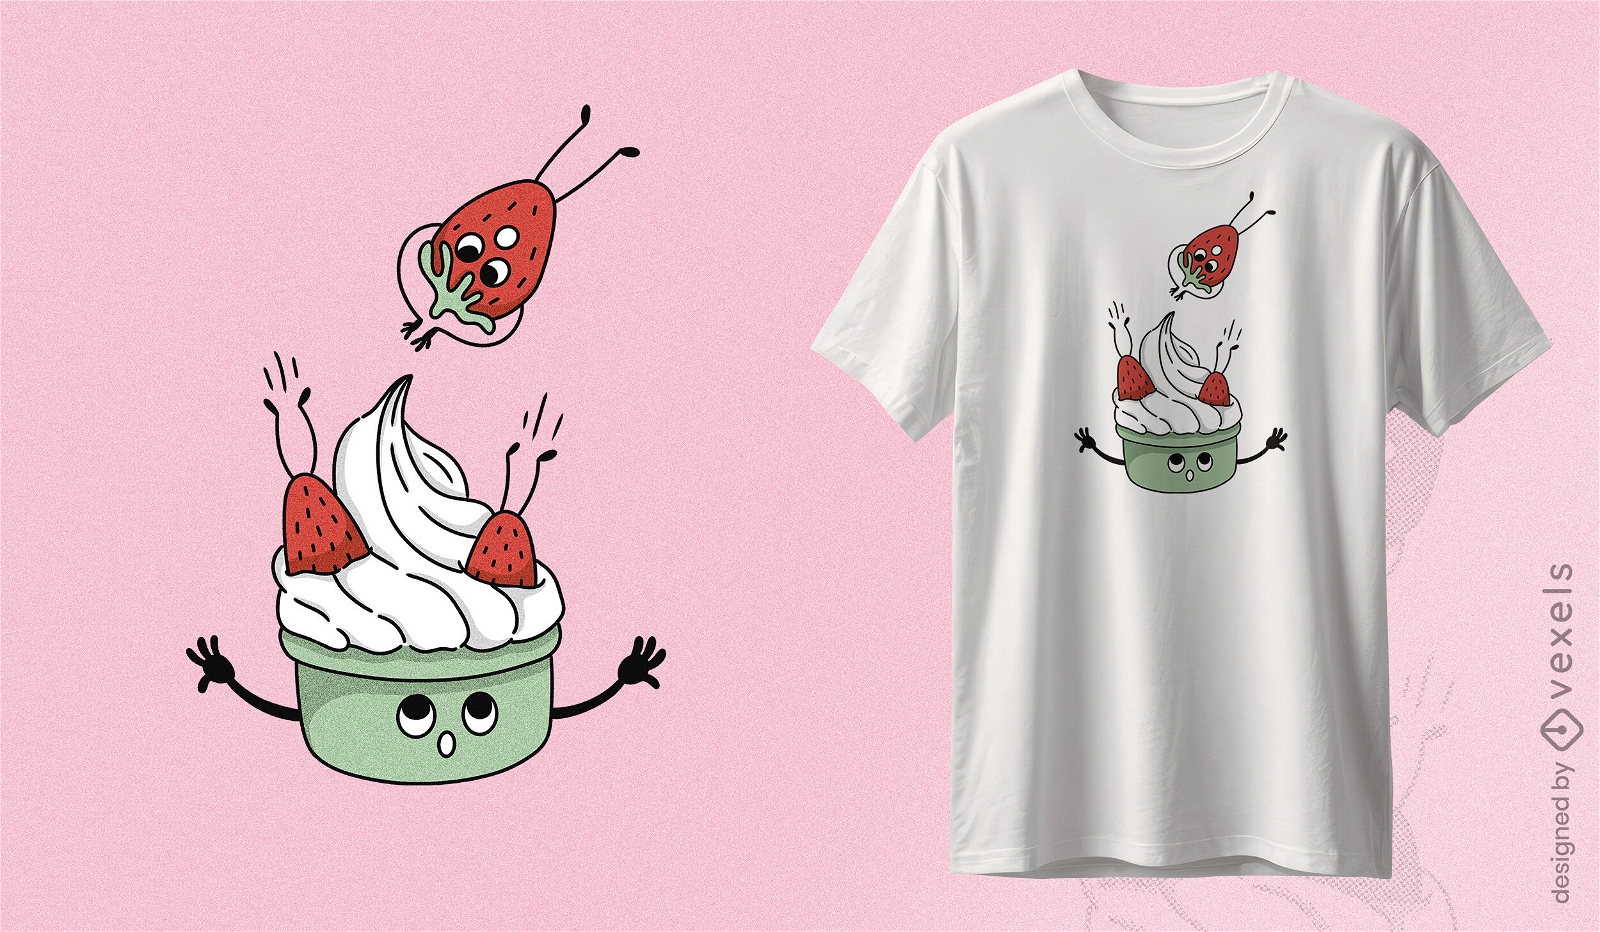 Diseño de camiseta divertido de fresas y crema Diseño de camiseta caprichoso que presenta fresas alegres saltando a un tazón de crema con expresiones faciales divertidas.